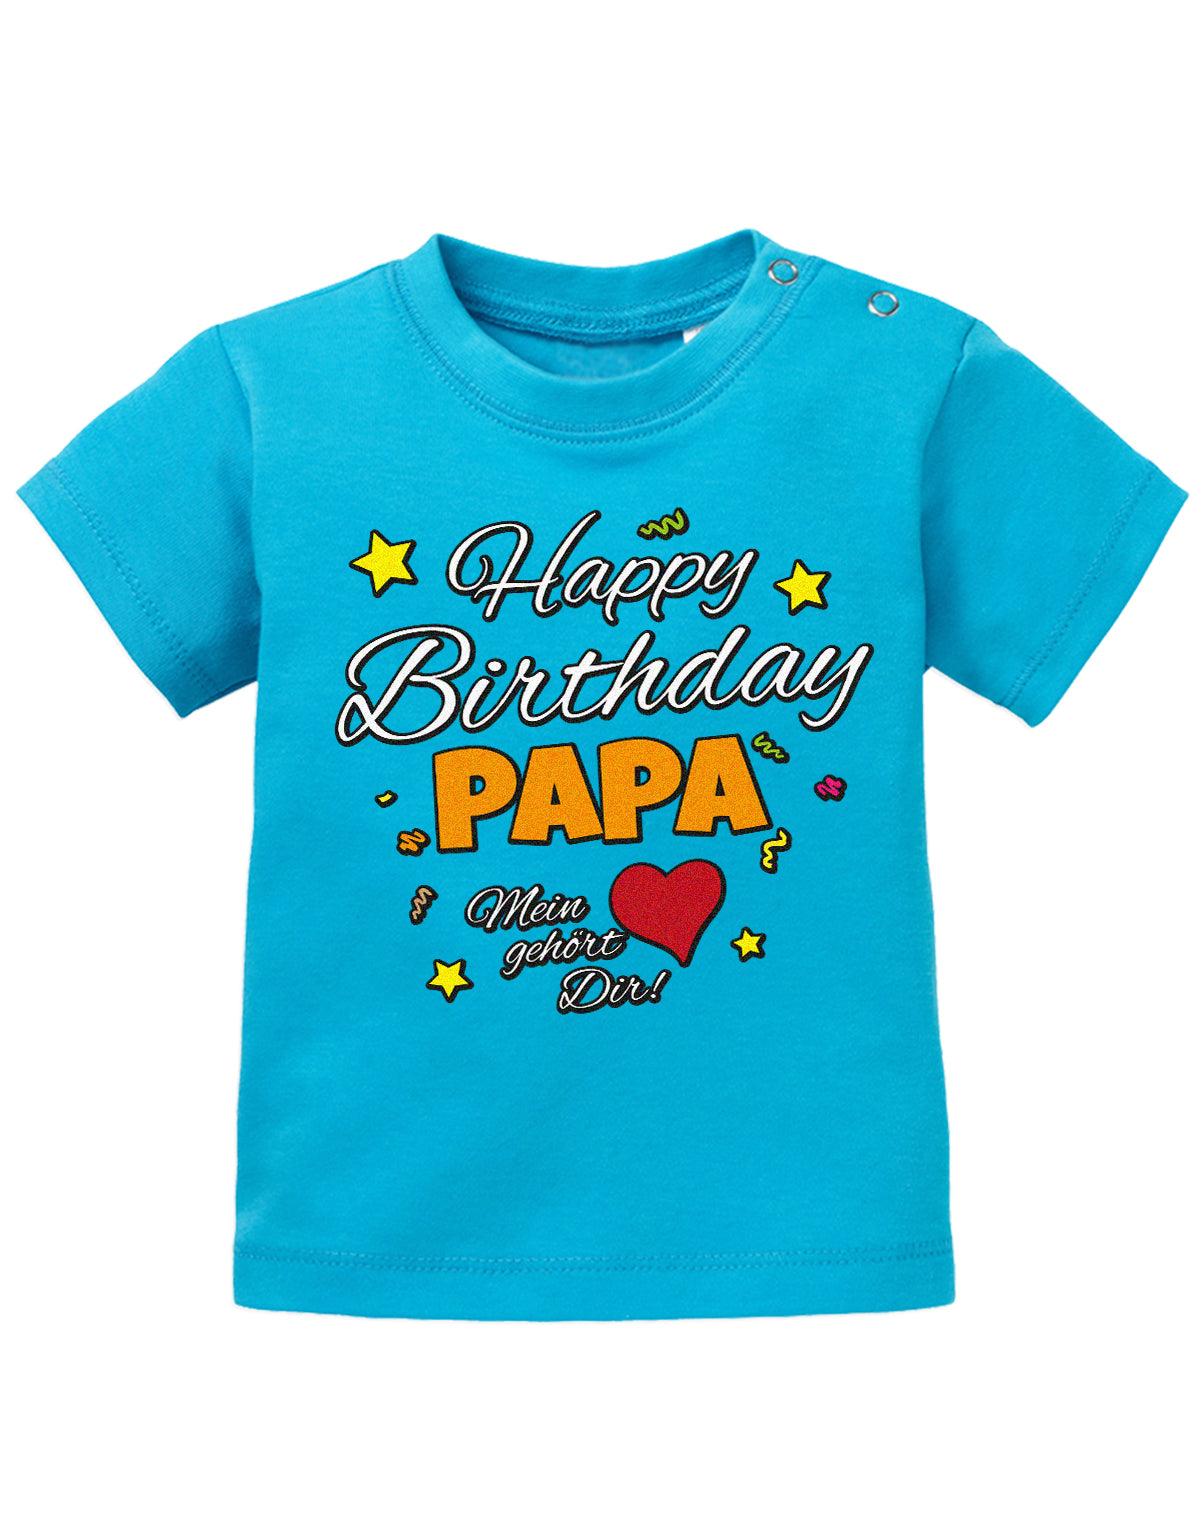 Papa Spruch Baby Shirt. Happy Birthday, Papa, mein Herz gehört Dir. Blau